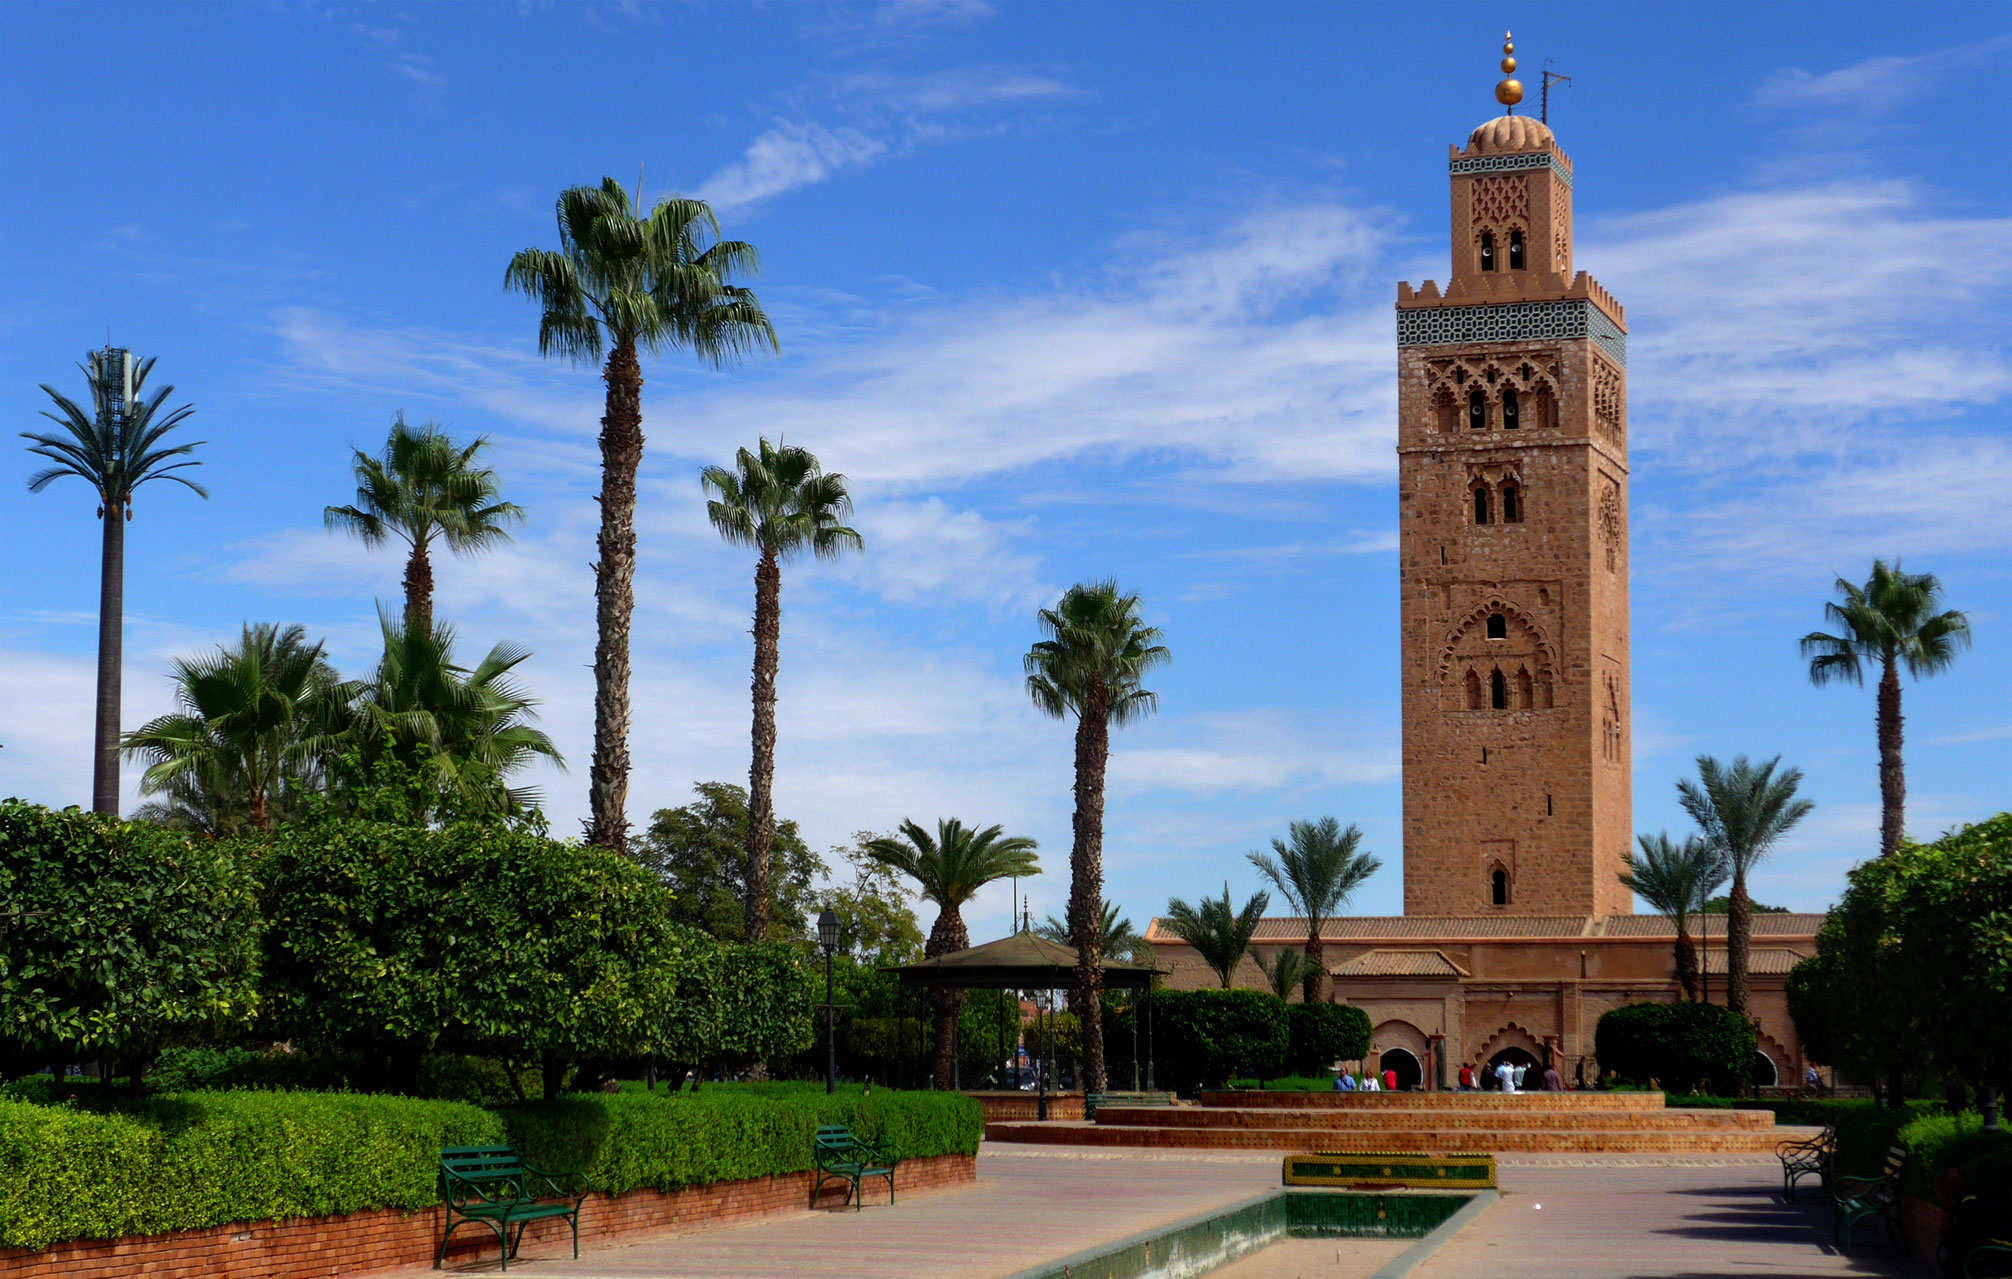   marrakech